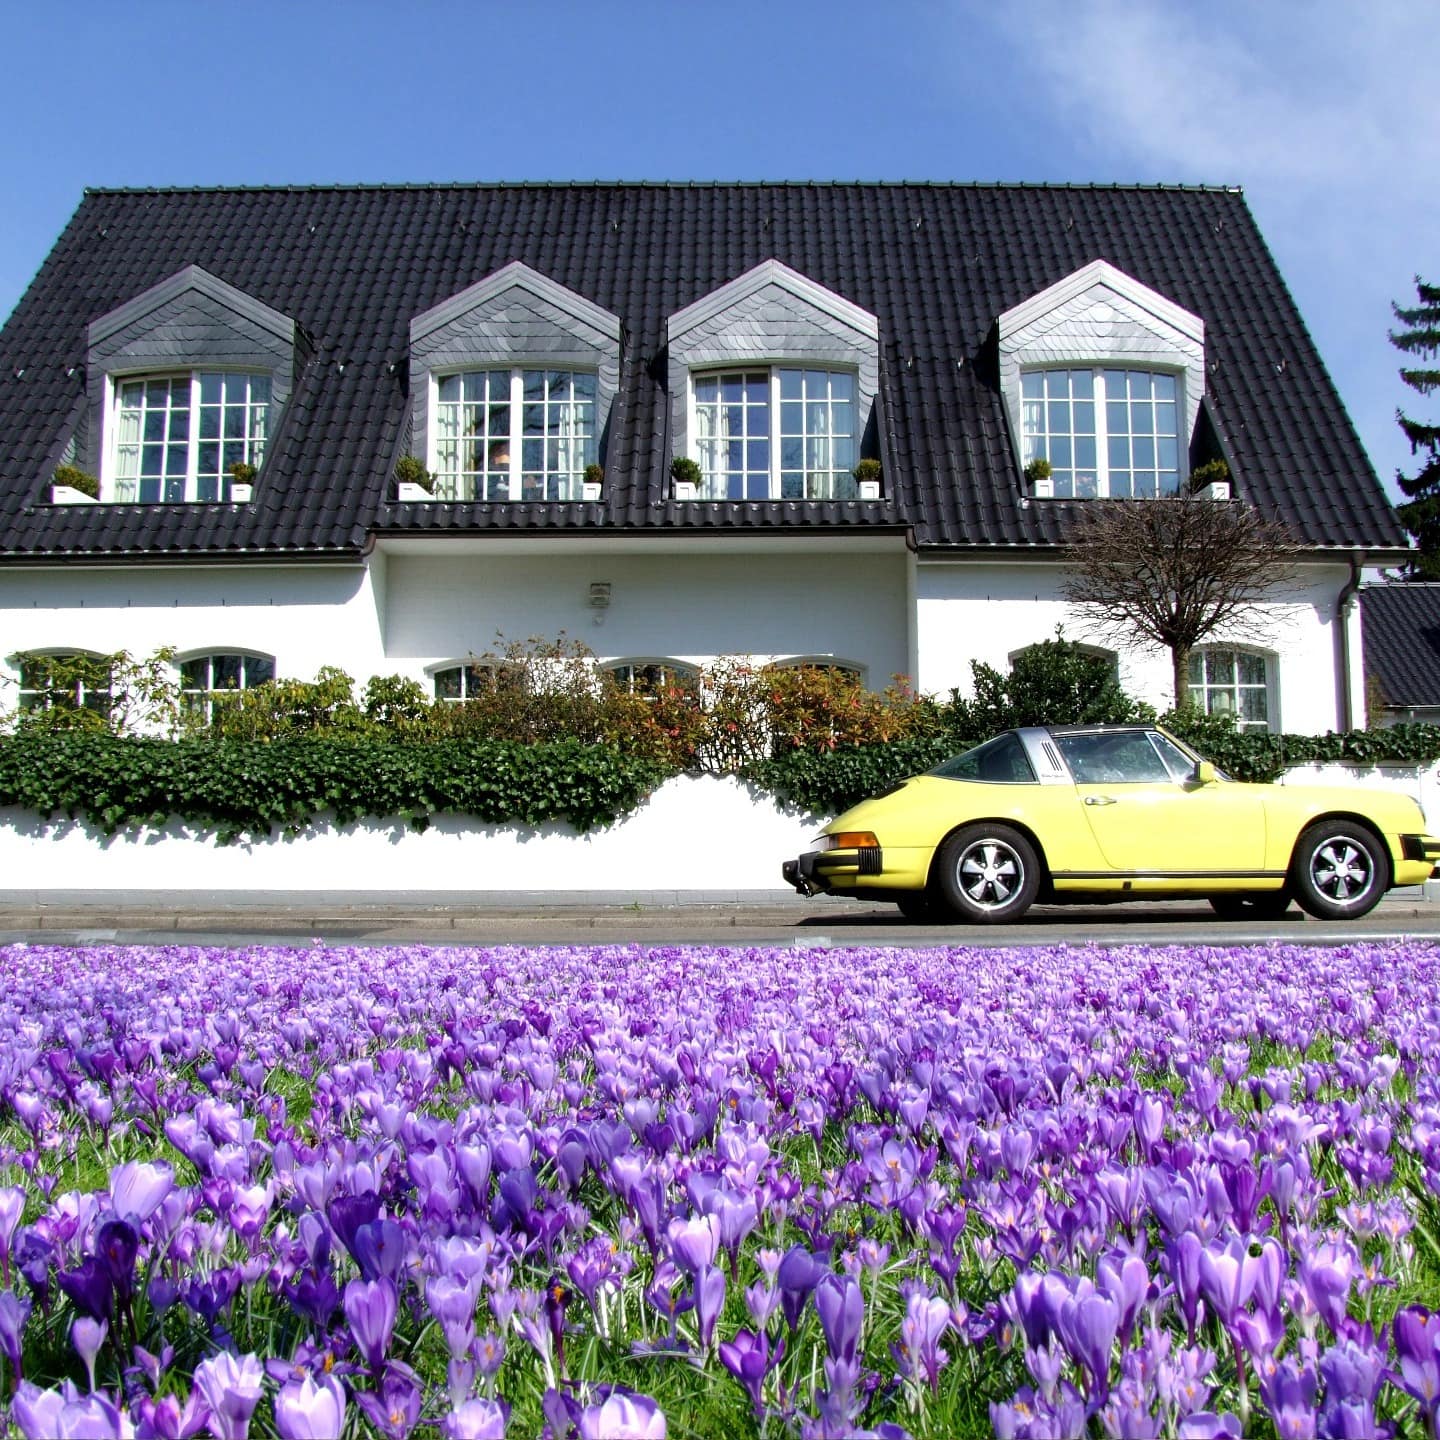 Luxus-Ferienhaus in Deutschland mit überwachsener Mauer; davor parkt ein gelber Porsche und blühende Krokusse sind zu sehen